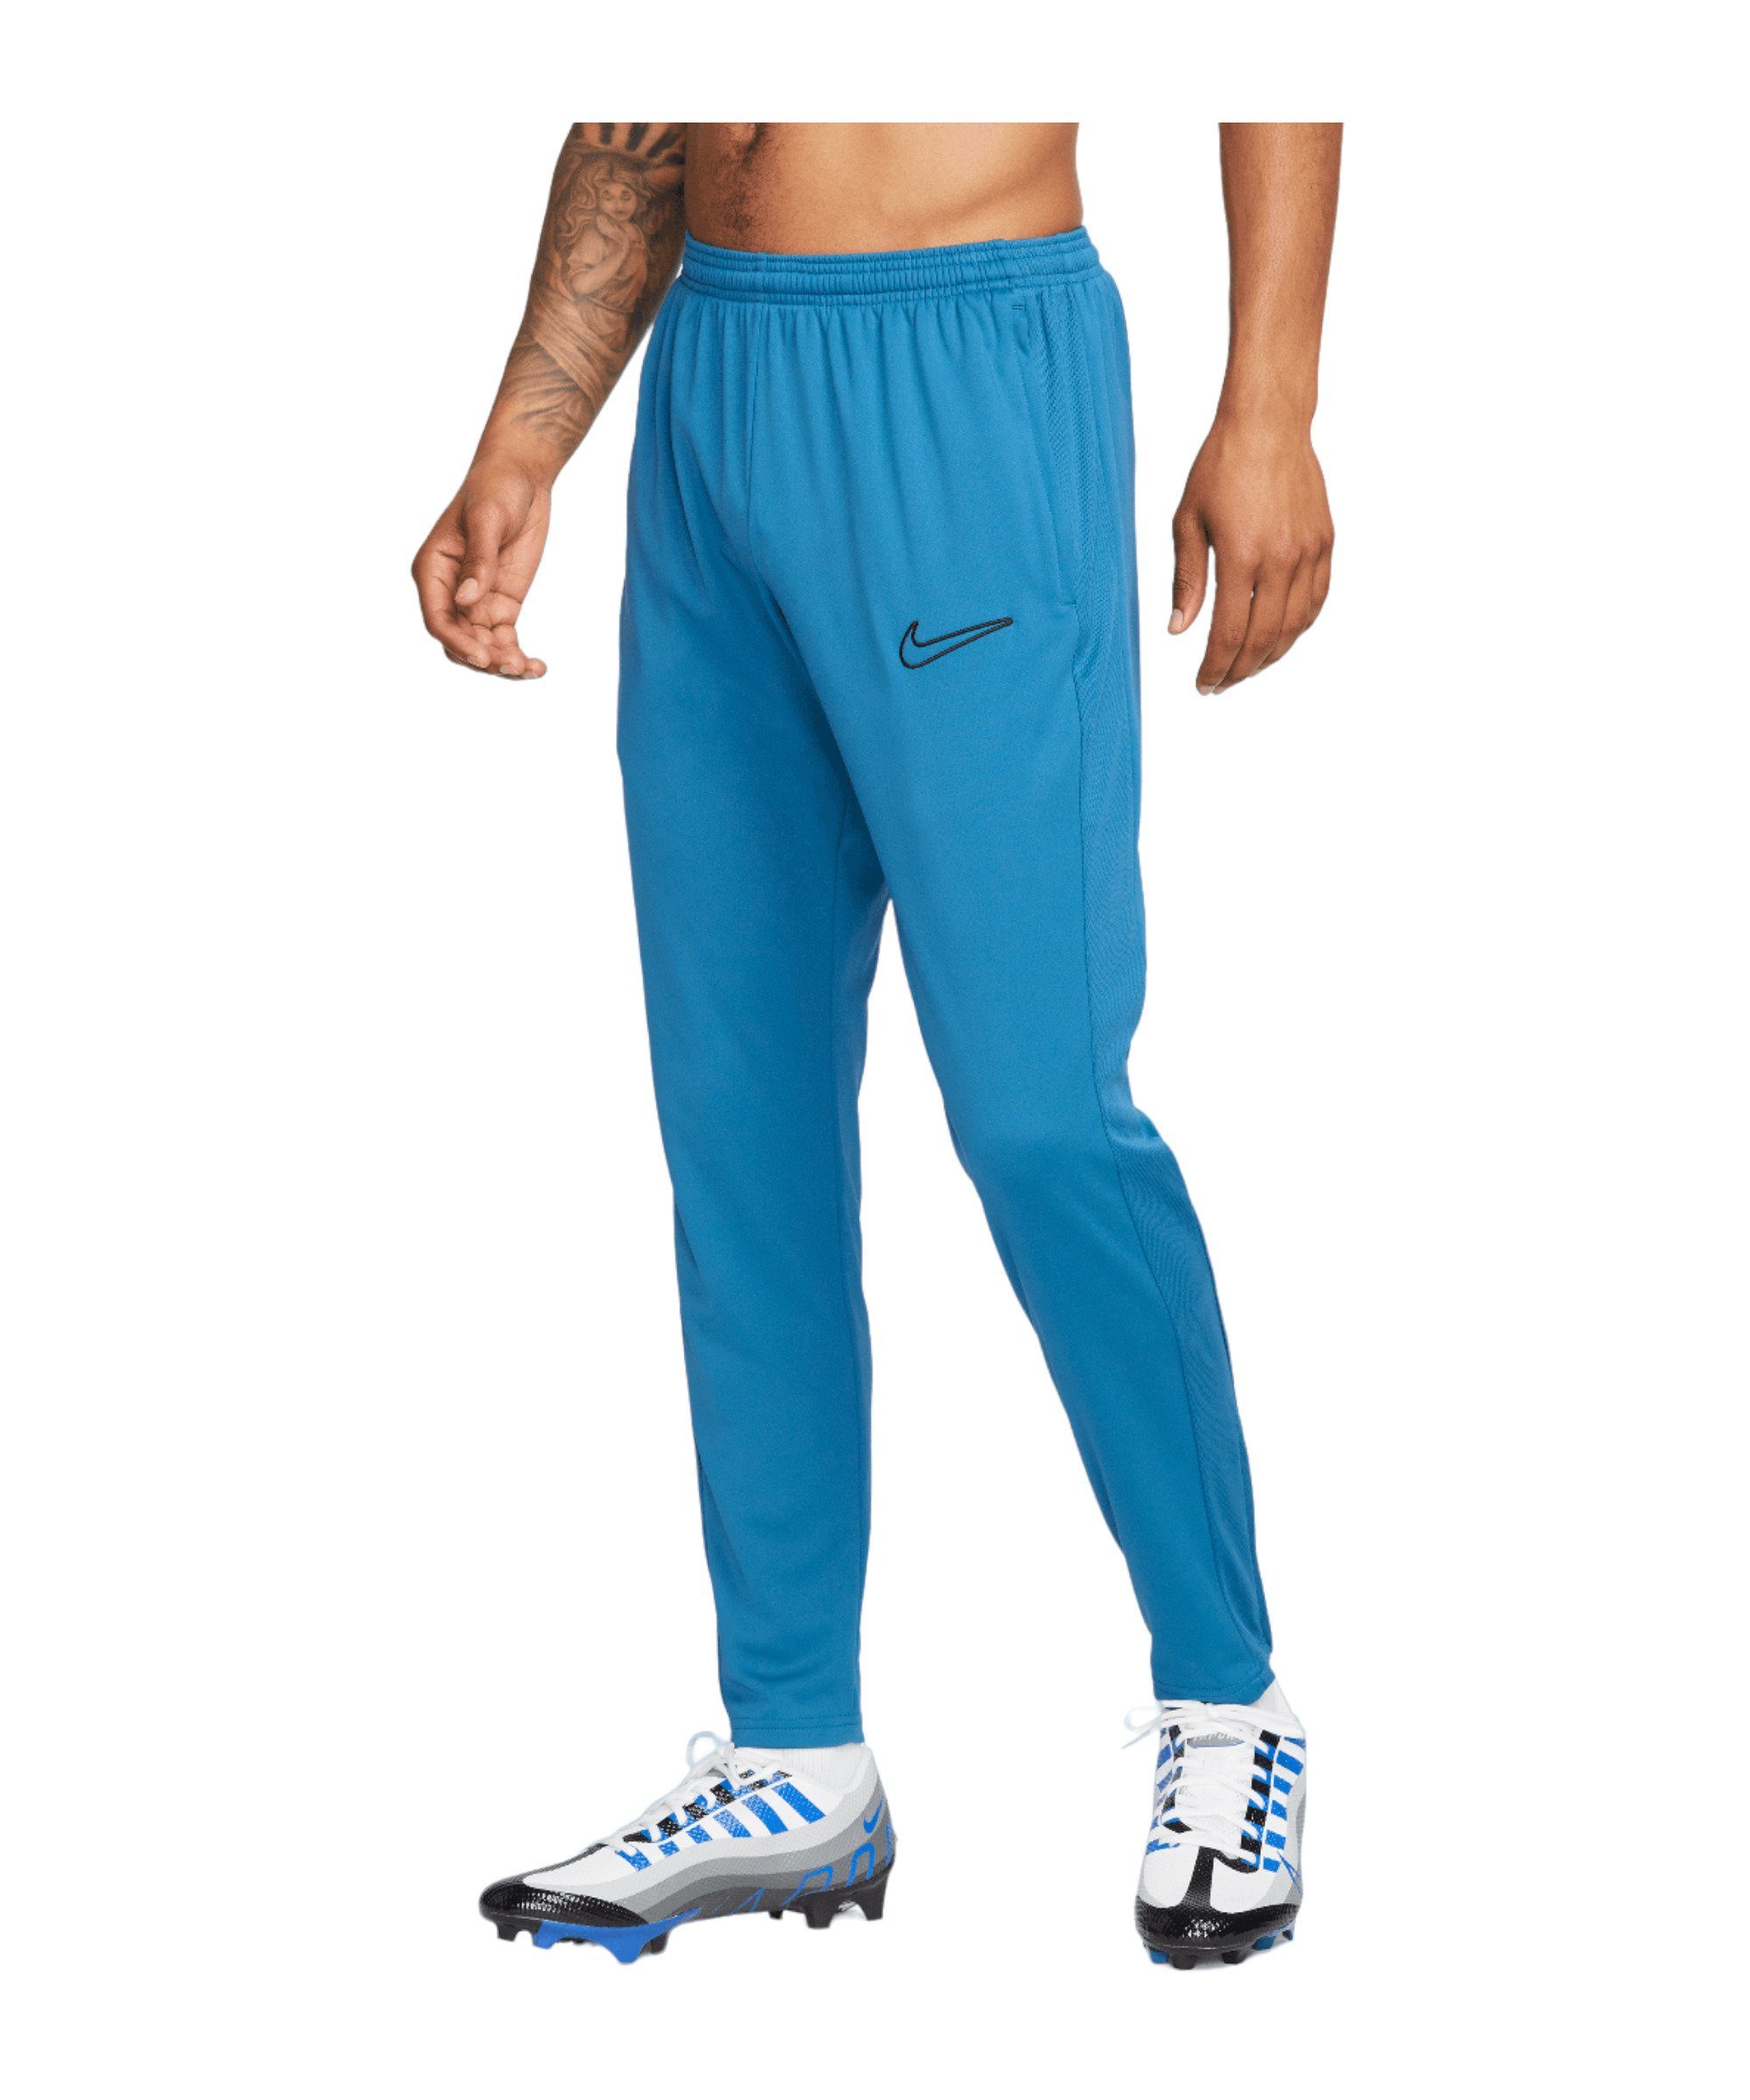 Nike Sporthose Academy Trainingshose blaublauschwarz